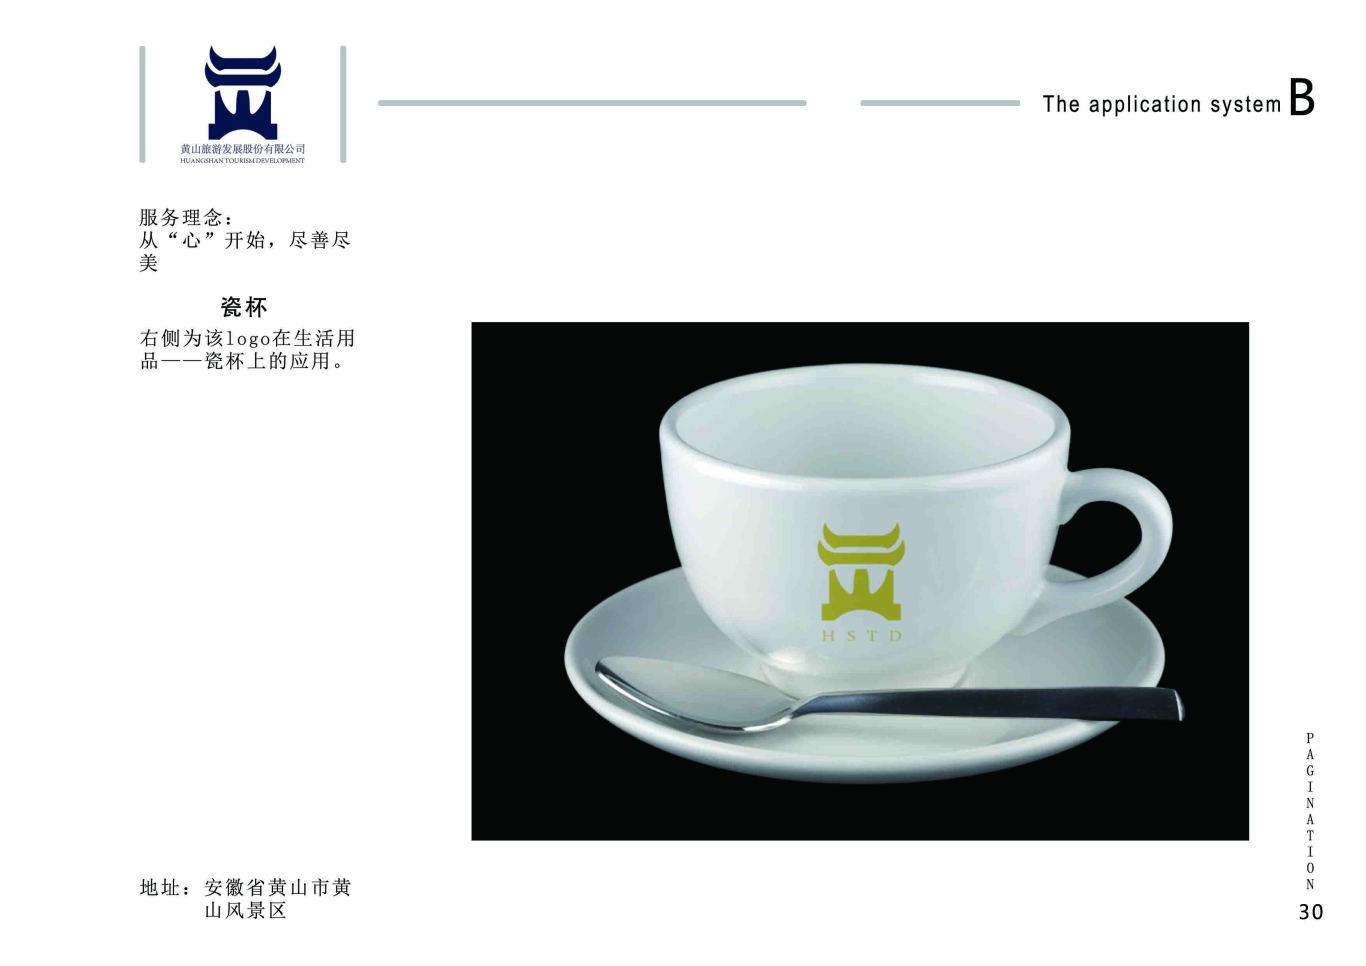 黄山旅游发展股份有限公司logo设计图7